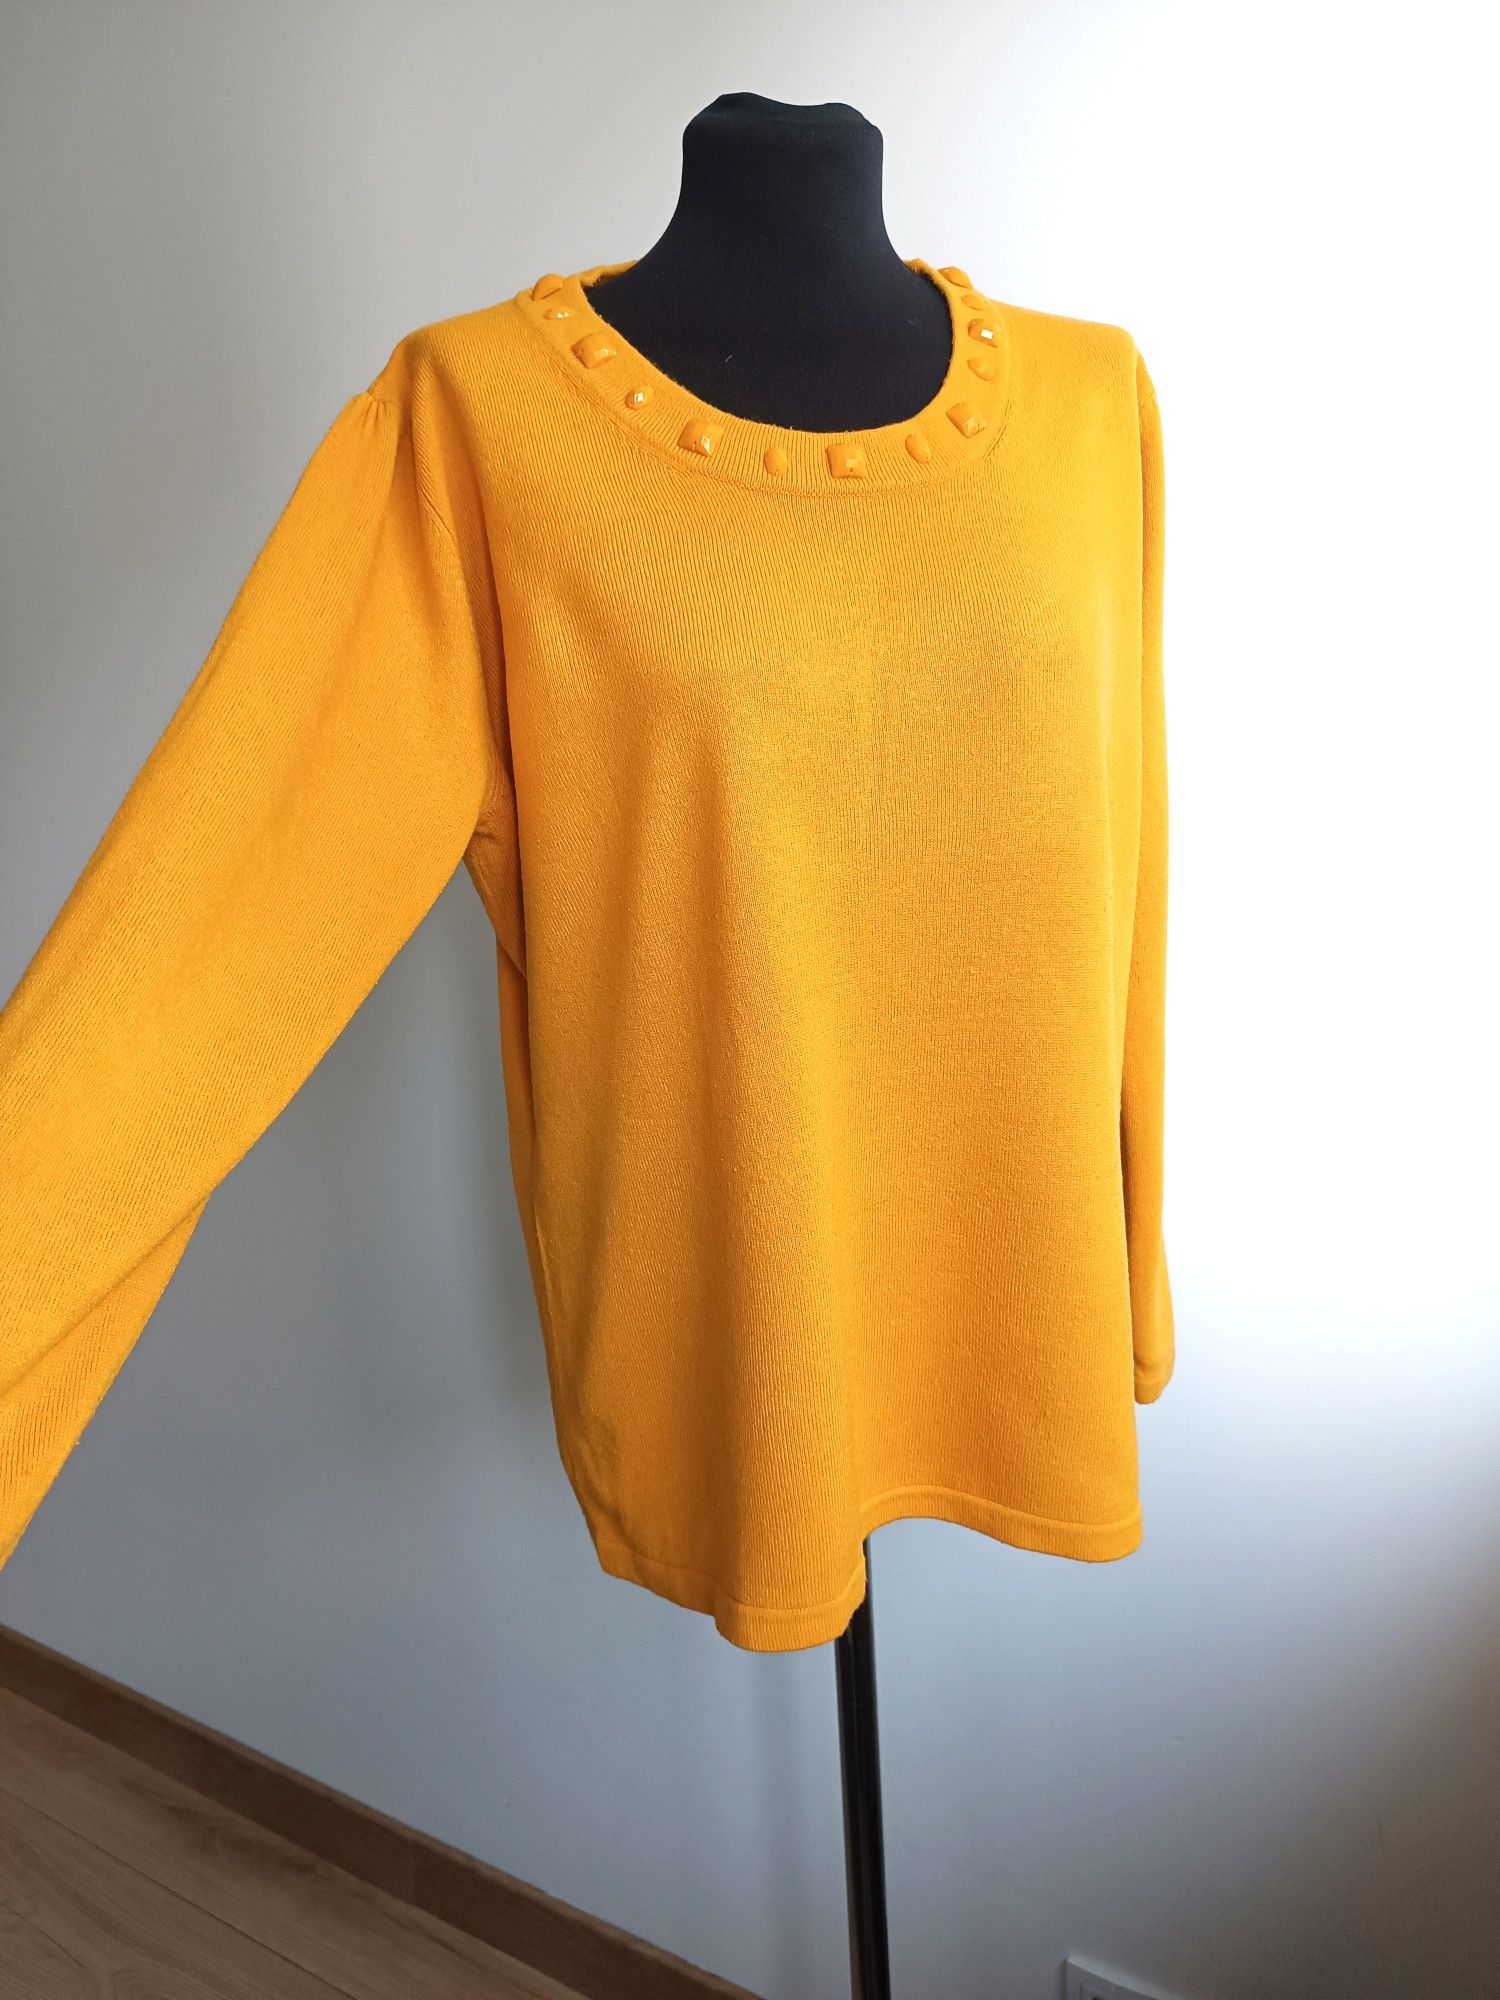 Pomarańczowy sweterek z ozdobnym dekoltem XL C&A na zimę ciepły kobiec